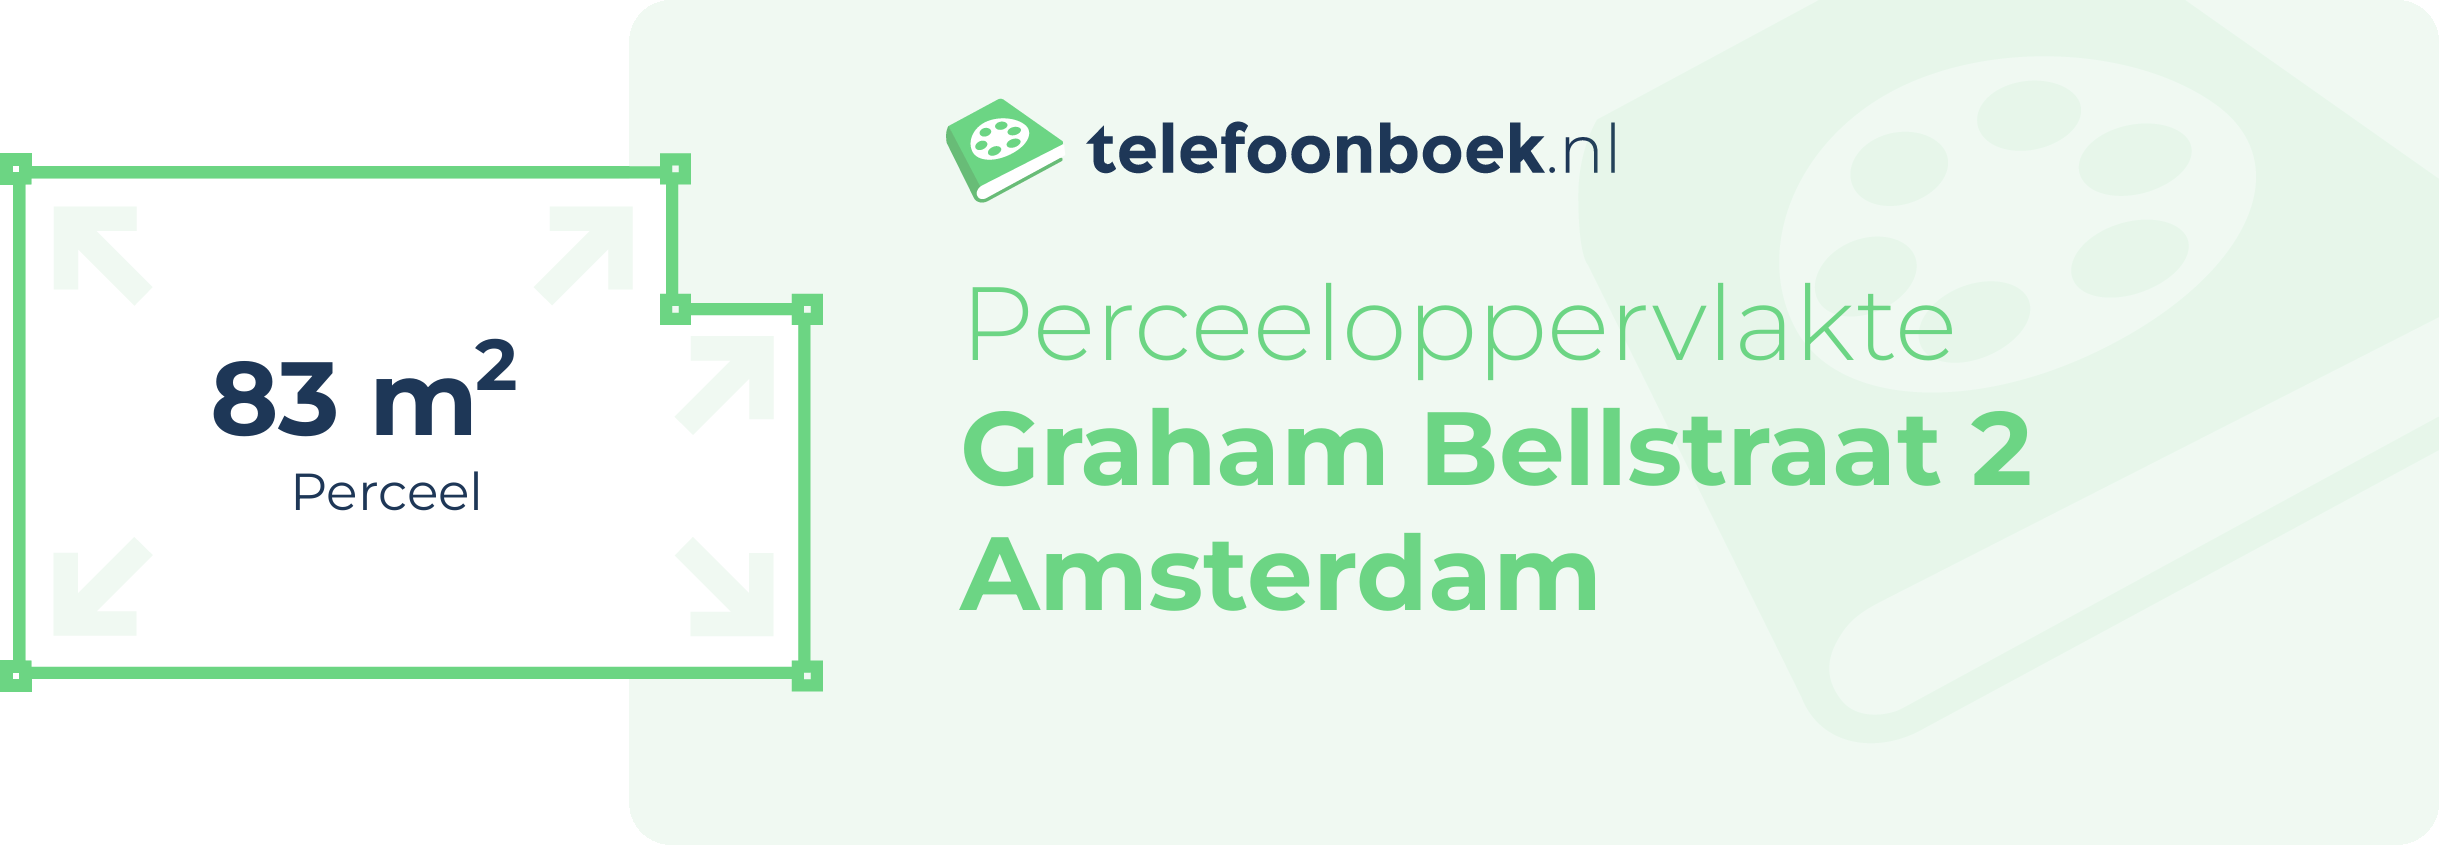 Perceeloppervlakte Graham Bellstraat 2 Amsterdam